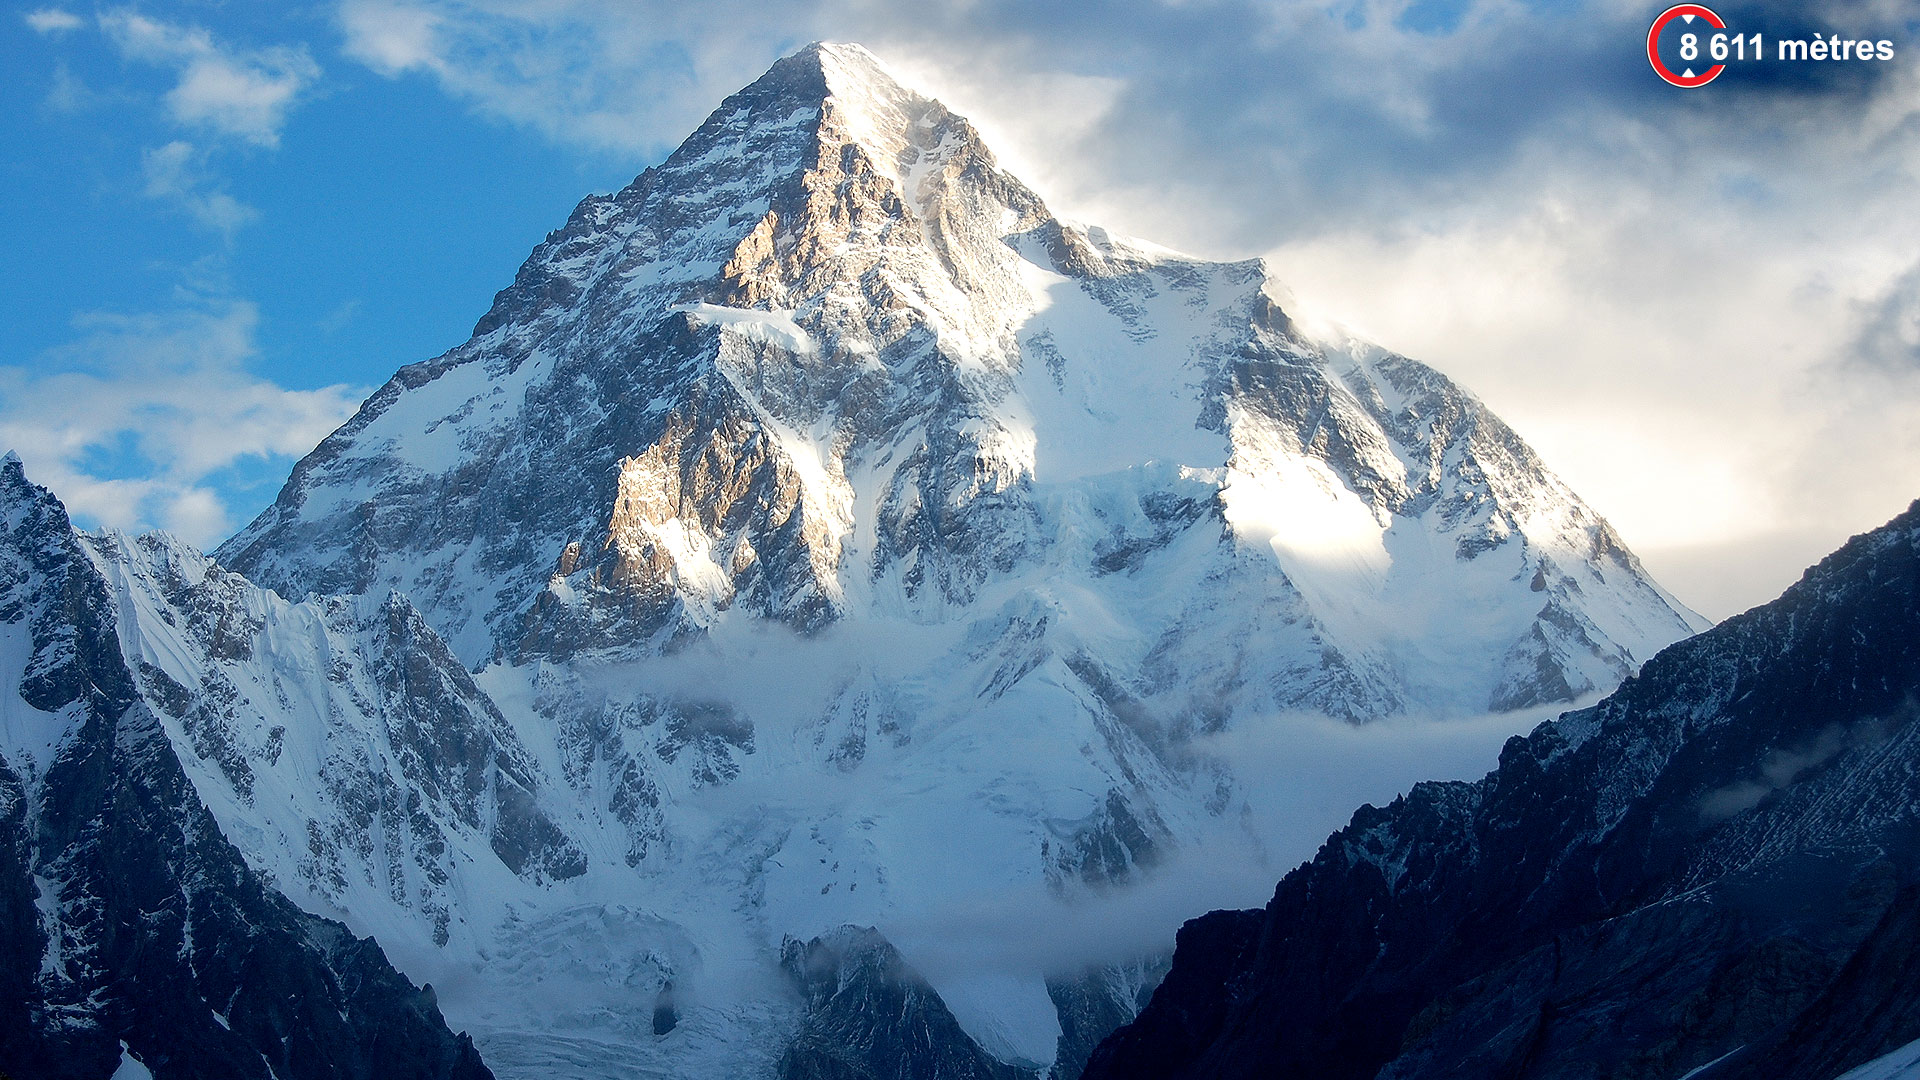 K2, la « montagne sans pitié ». Avec 8.611 mètres, le K2 est le deuxième plus haut sommet du monde, situé à la frontière entre la Chine et le Pakistan dans le massif du Karakoram. Pourtant, il est considéré comme beaucoup plus délicat à gravir et dangereux que l’Everest. Seulement un peu plus de 300 alpinistes sont parvenus au sommet et 81 personnes y ont péri. À ce jour, aucune ascension n’a été entreprise en hiver au vu des conditions extrêmes.© Maria Ly, CC by 2.0Pour des ascensions de ce type, mieux vaut être très bien équipé. K2 est aussi une marque de ski et produits de montagne ! 